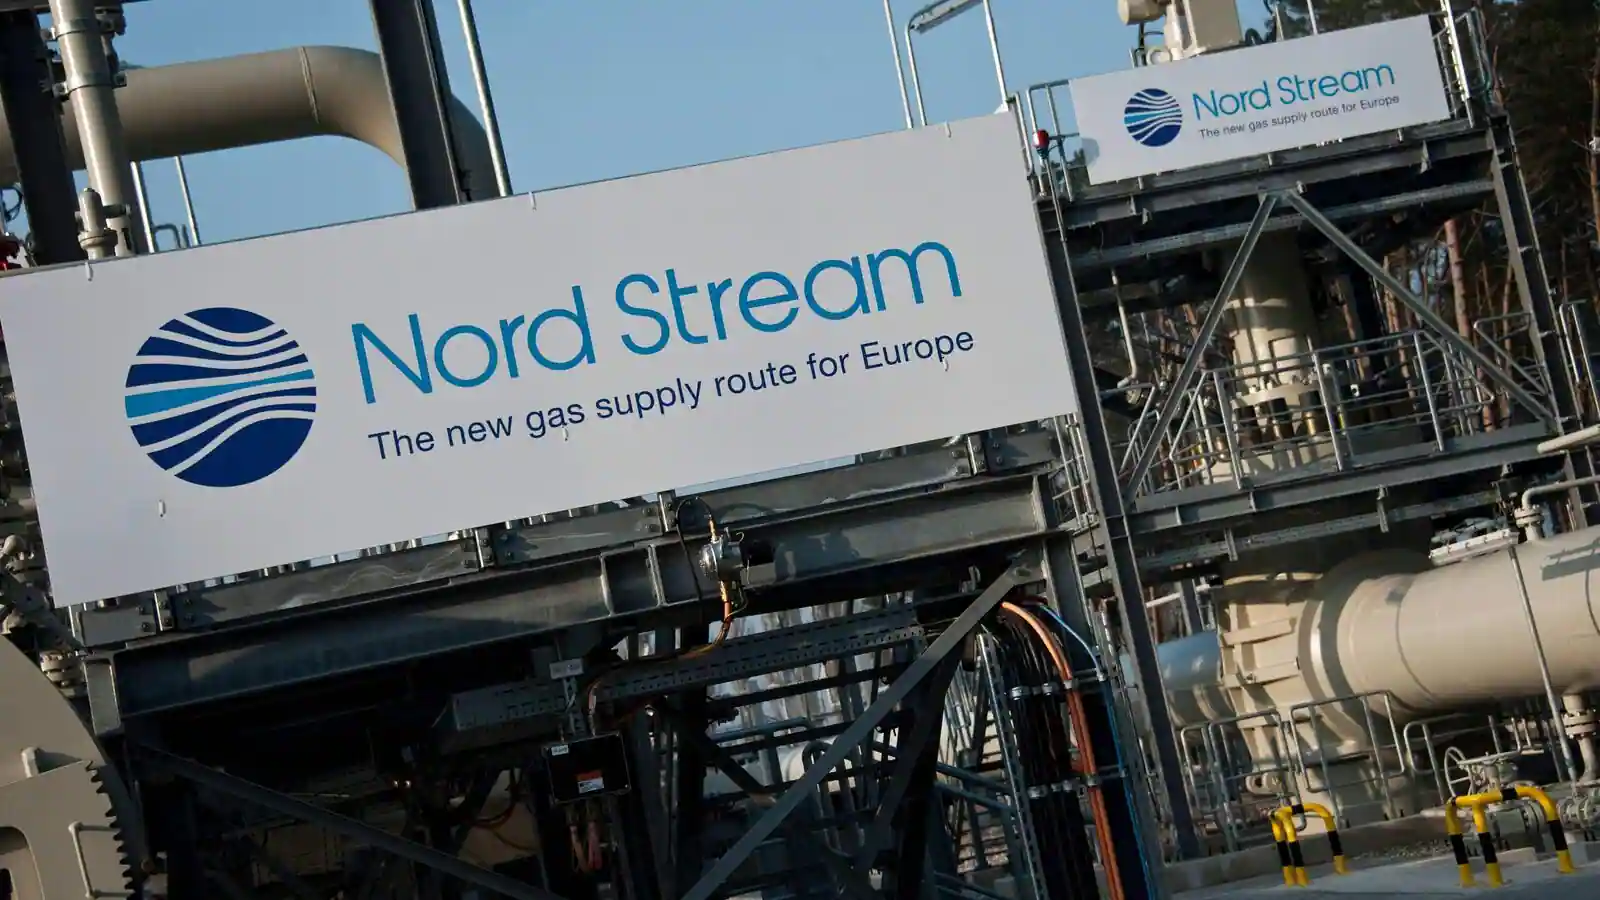 La Russia ha interrotto il flusso di gas verso la Ue: Nord Stream 1 si è fermato